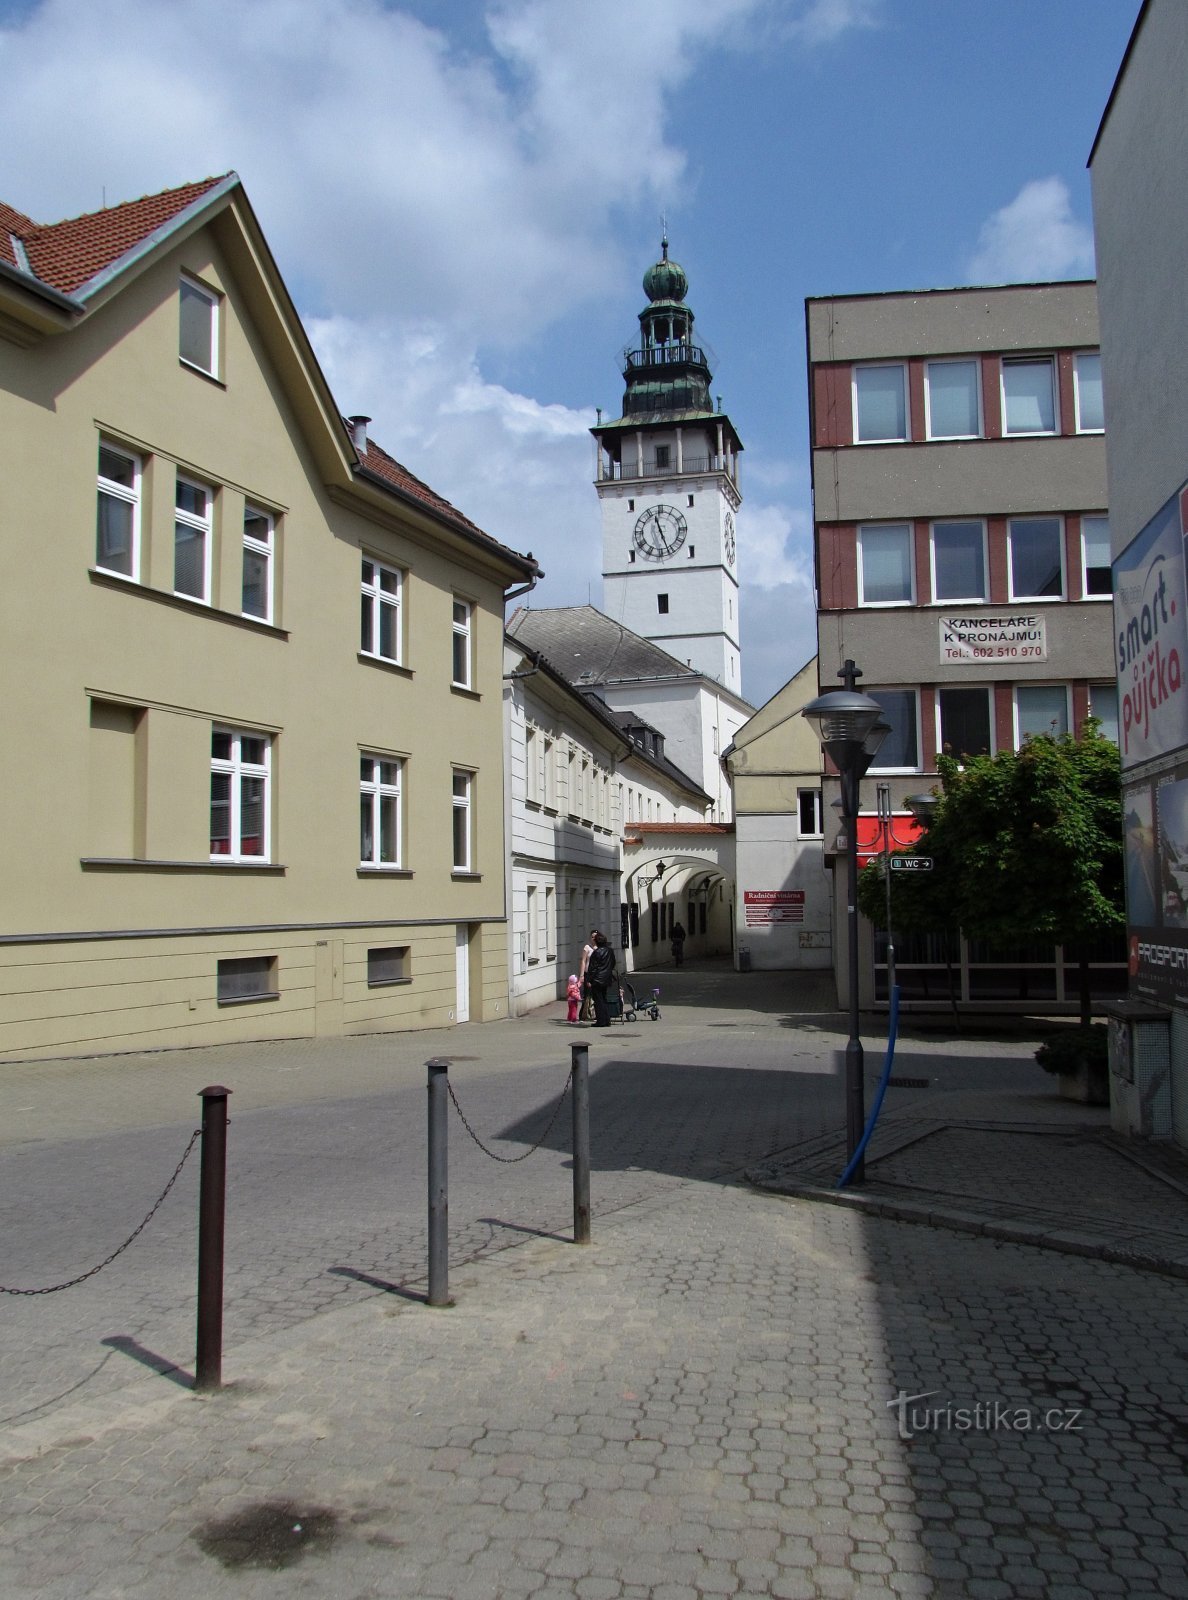 tòa tháp của tòa thị chính từ đường Radniční